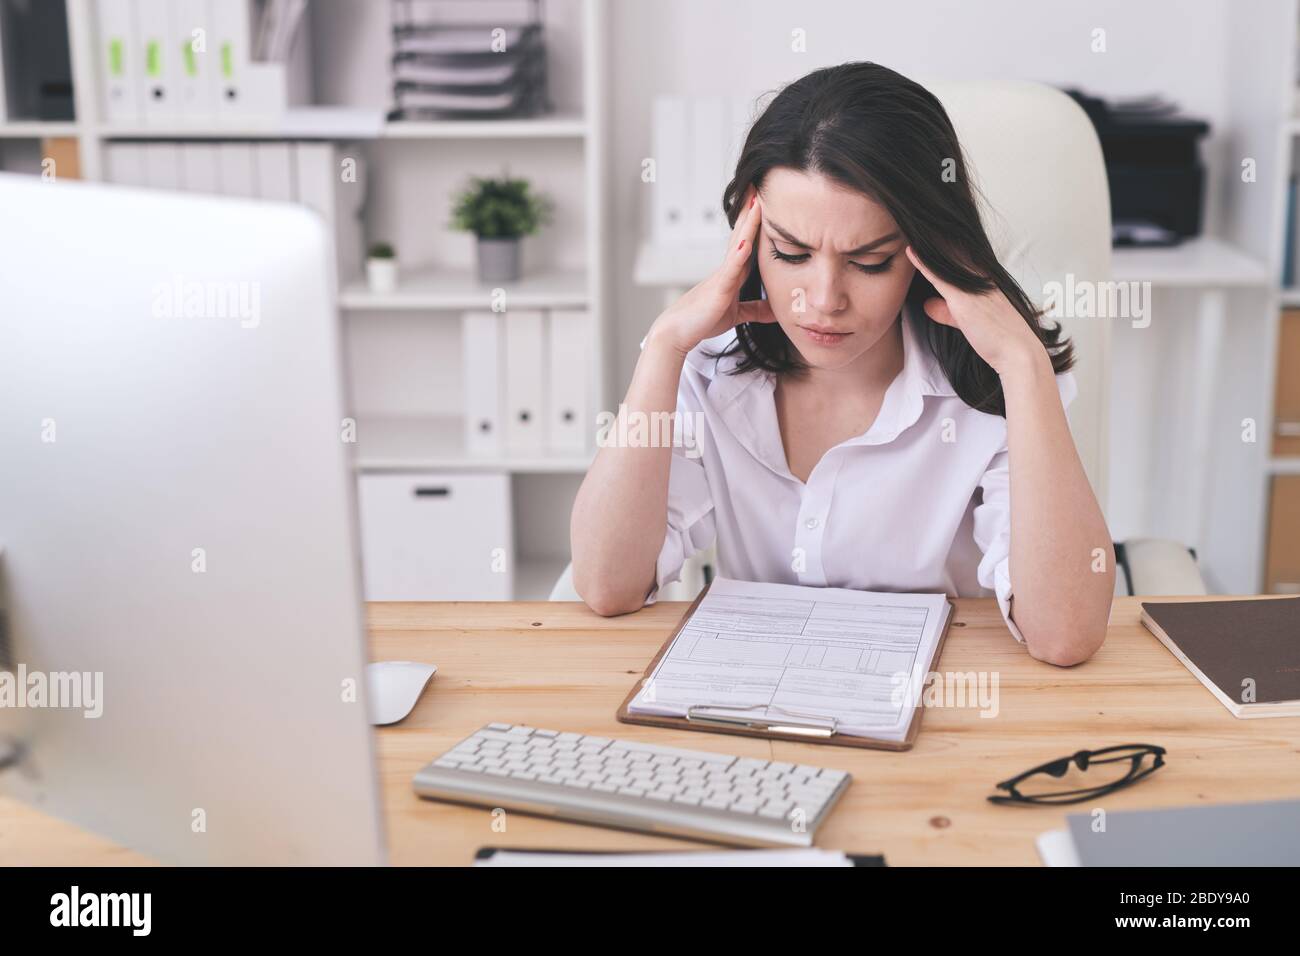 Junge ernsthafte Geschäftsfrau konzentriert sich auf das Lernen von Finanzdokumenten, während sie am Tisch sitzt und sich über Papiere beugt Stockfoto